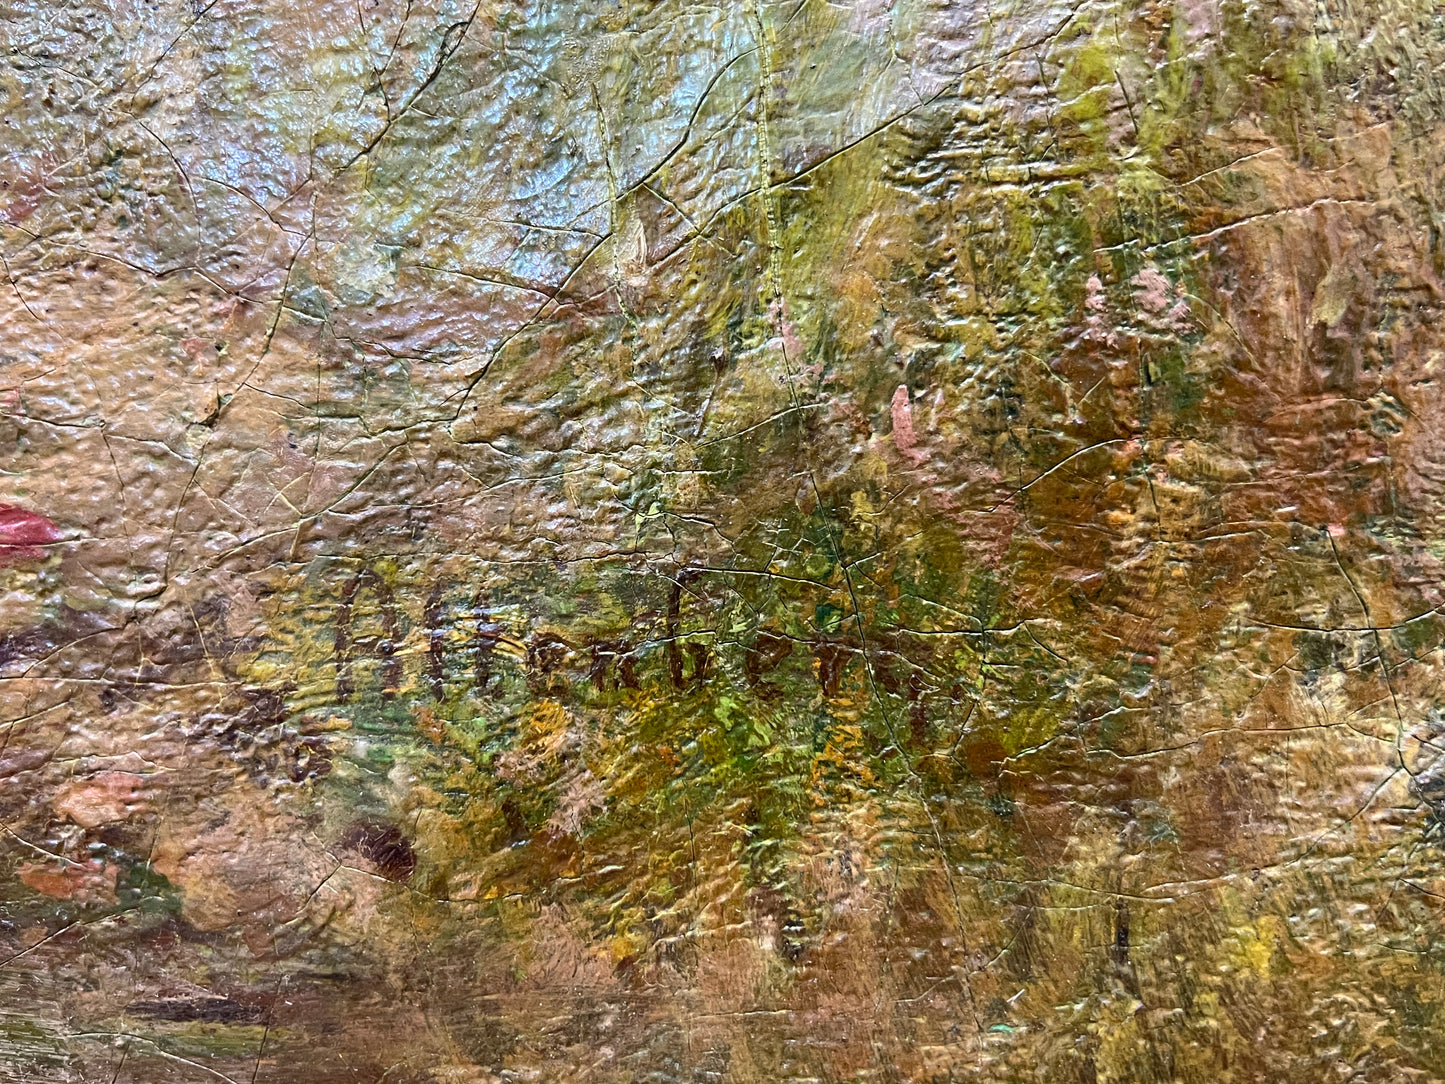 Großformatige Pracht: XXL Biedermeier Gemälde - Landschaft mit Fluss